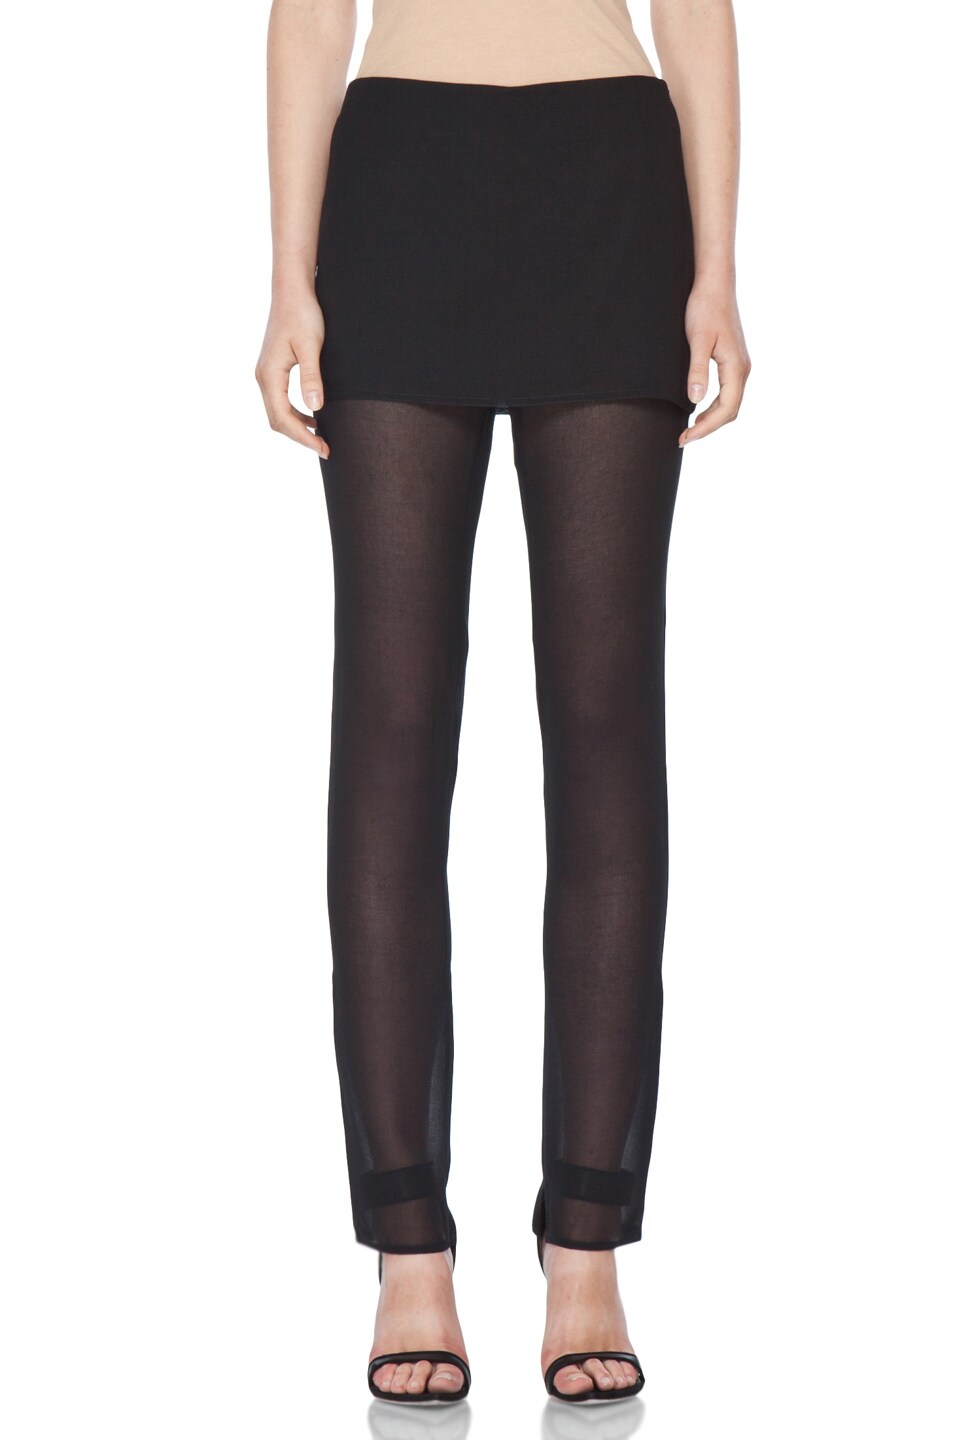 Image 1 of 3.1 phillip lim Slim Leg Trouser with Skirt Overlay in Black